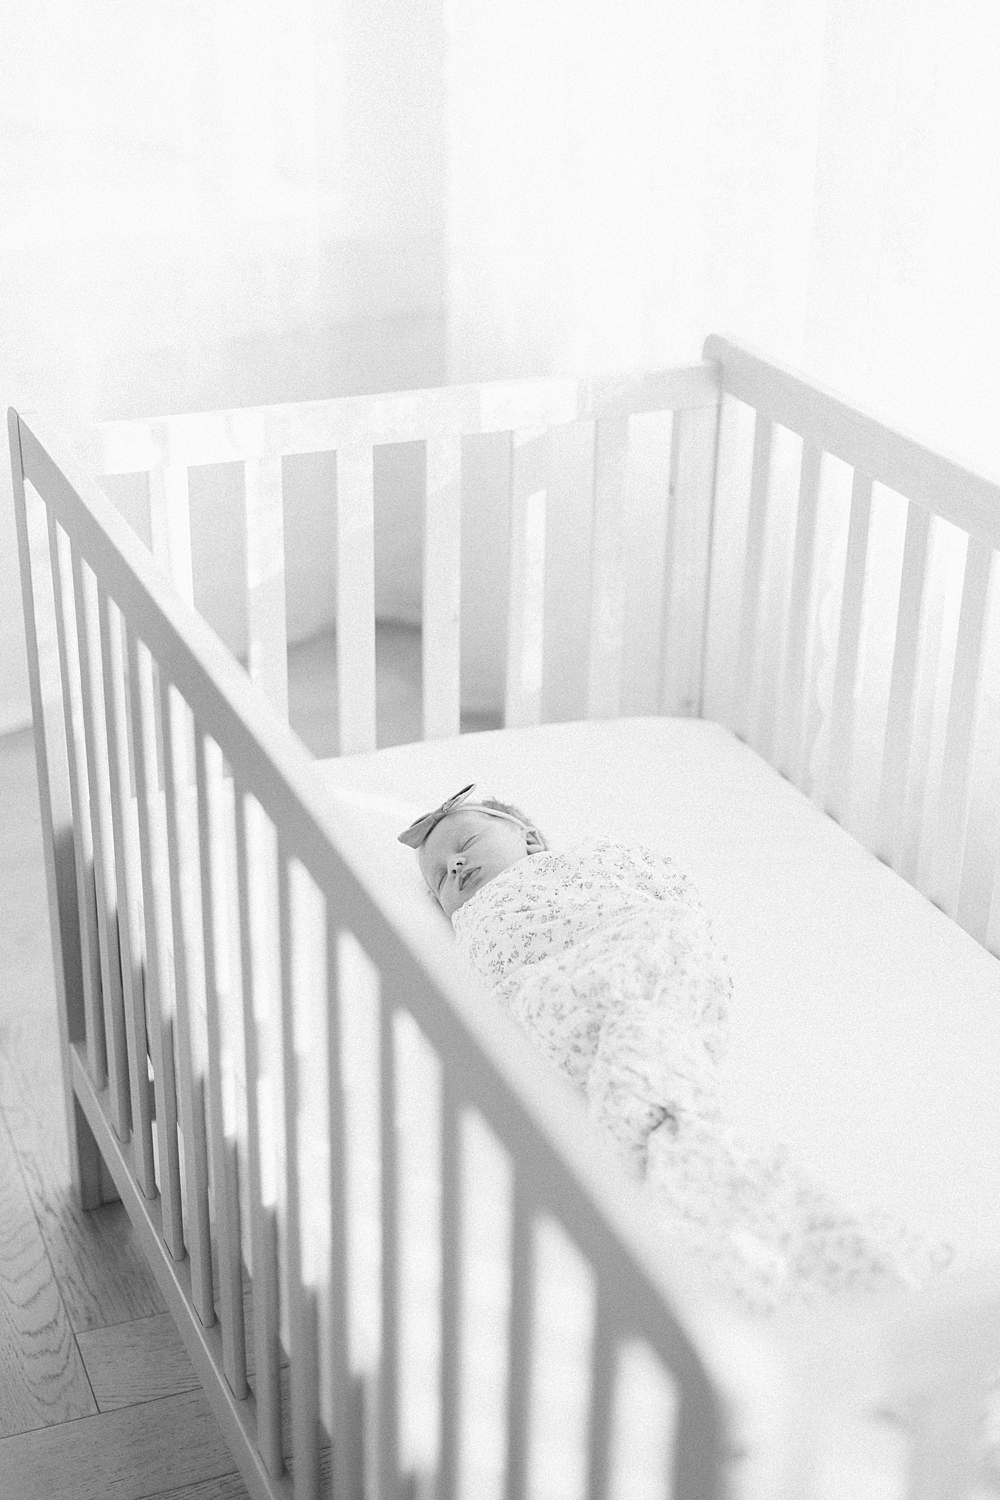 Baby M | Best Utah Newborn Photographer